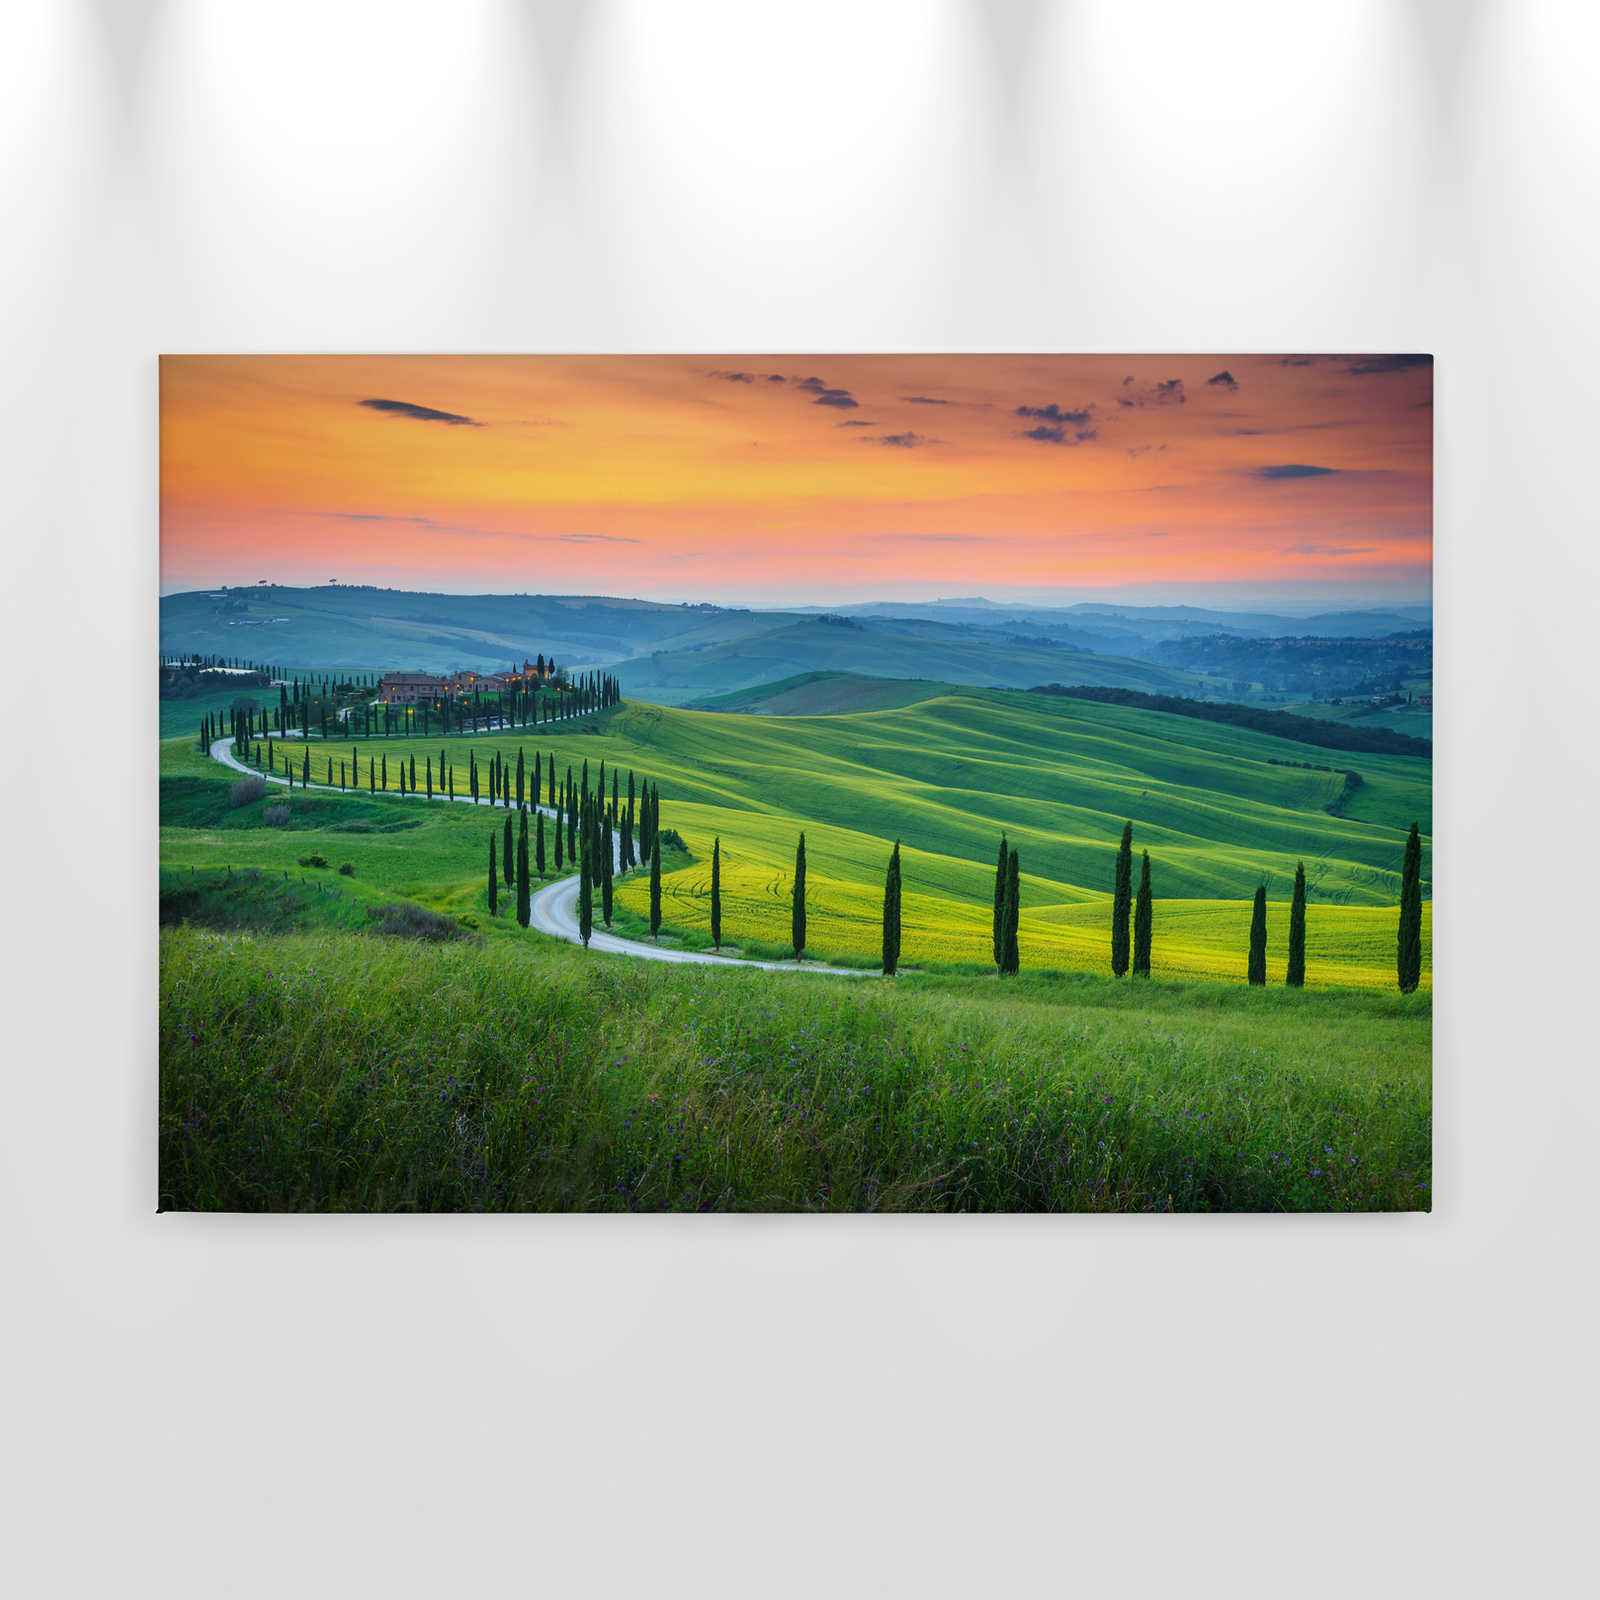             Canvas Toscane in de zonsopgang - 0.90 m x 0.60 m
        